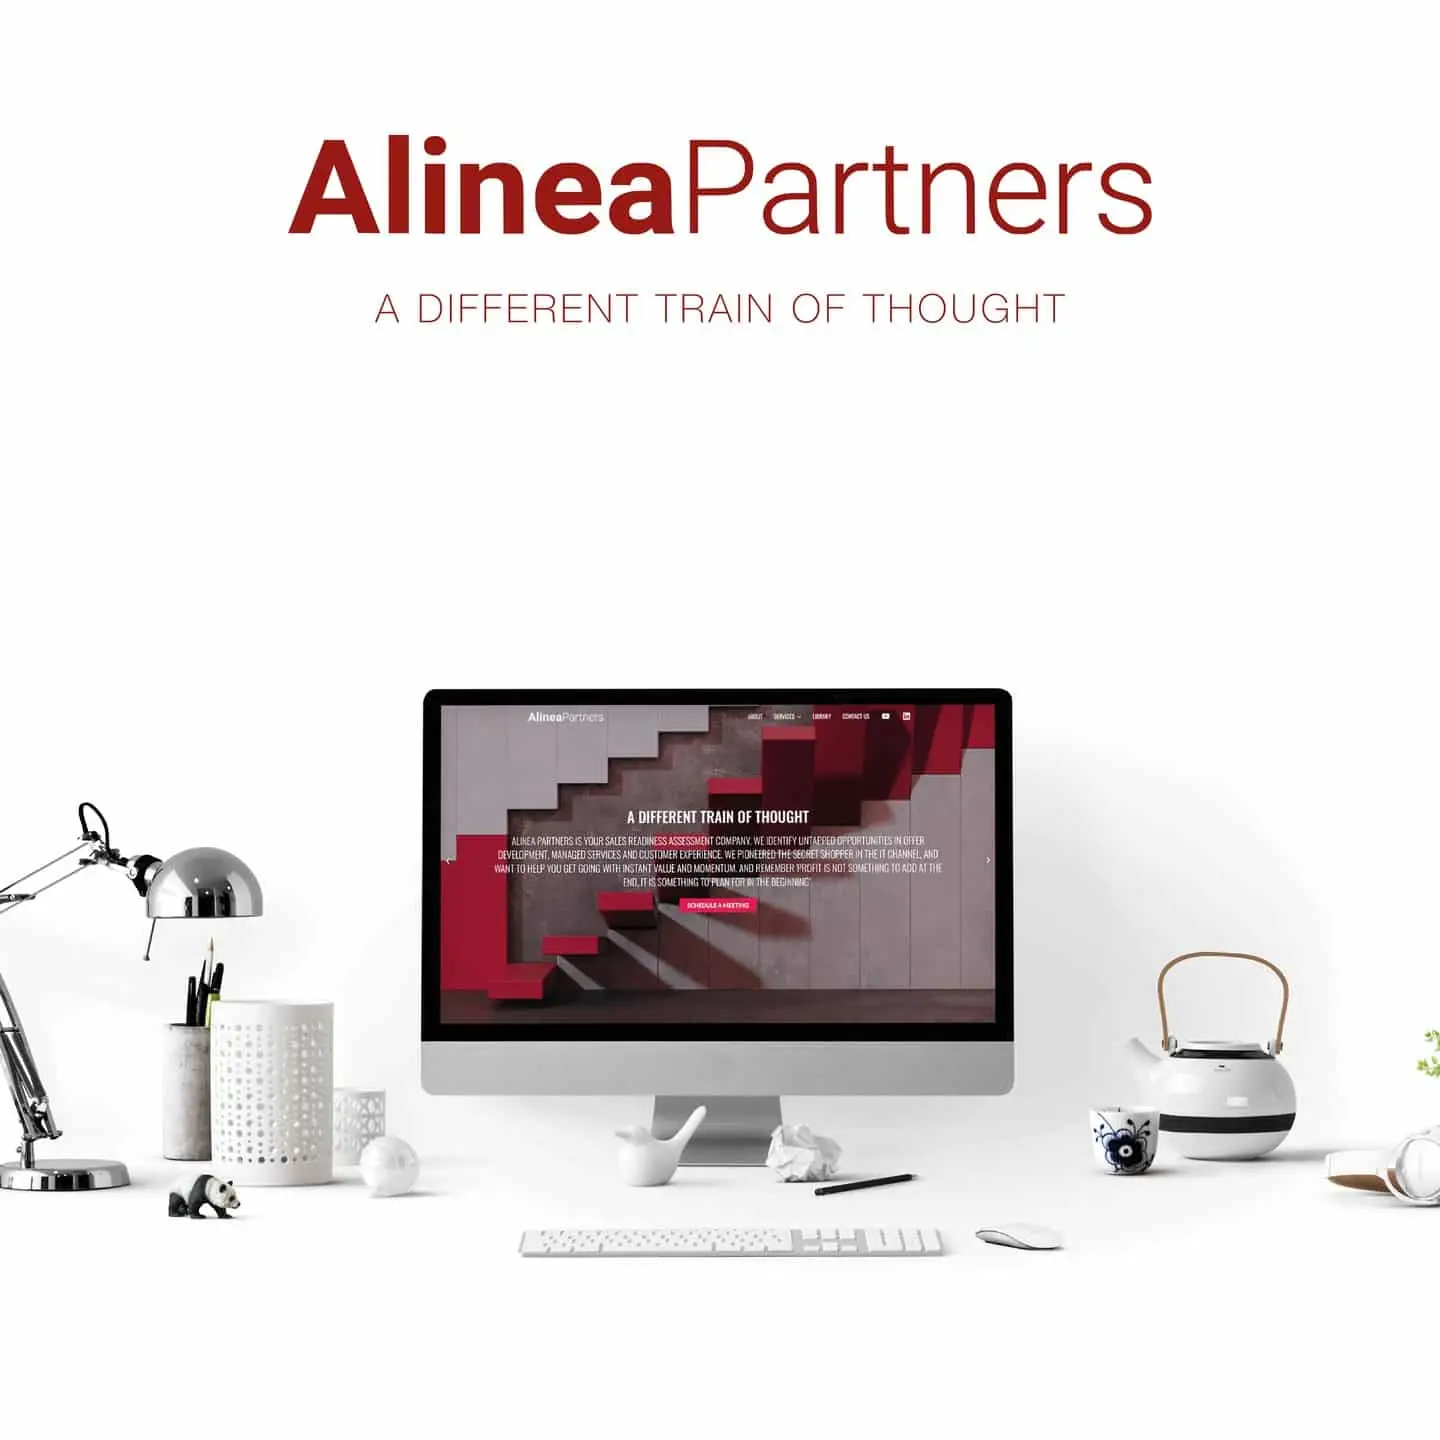 Alinea Partners' Website, Beispiel für Golden Wings Expertise im digitalen Marketing und Branding, präsentiert auf modernen Geräten.